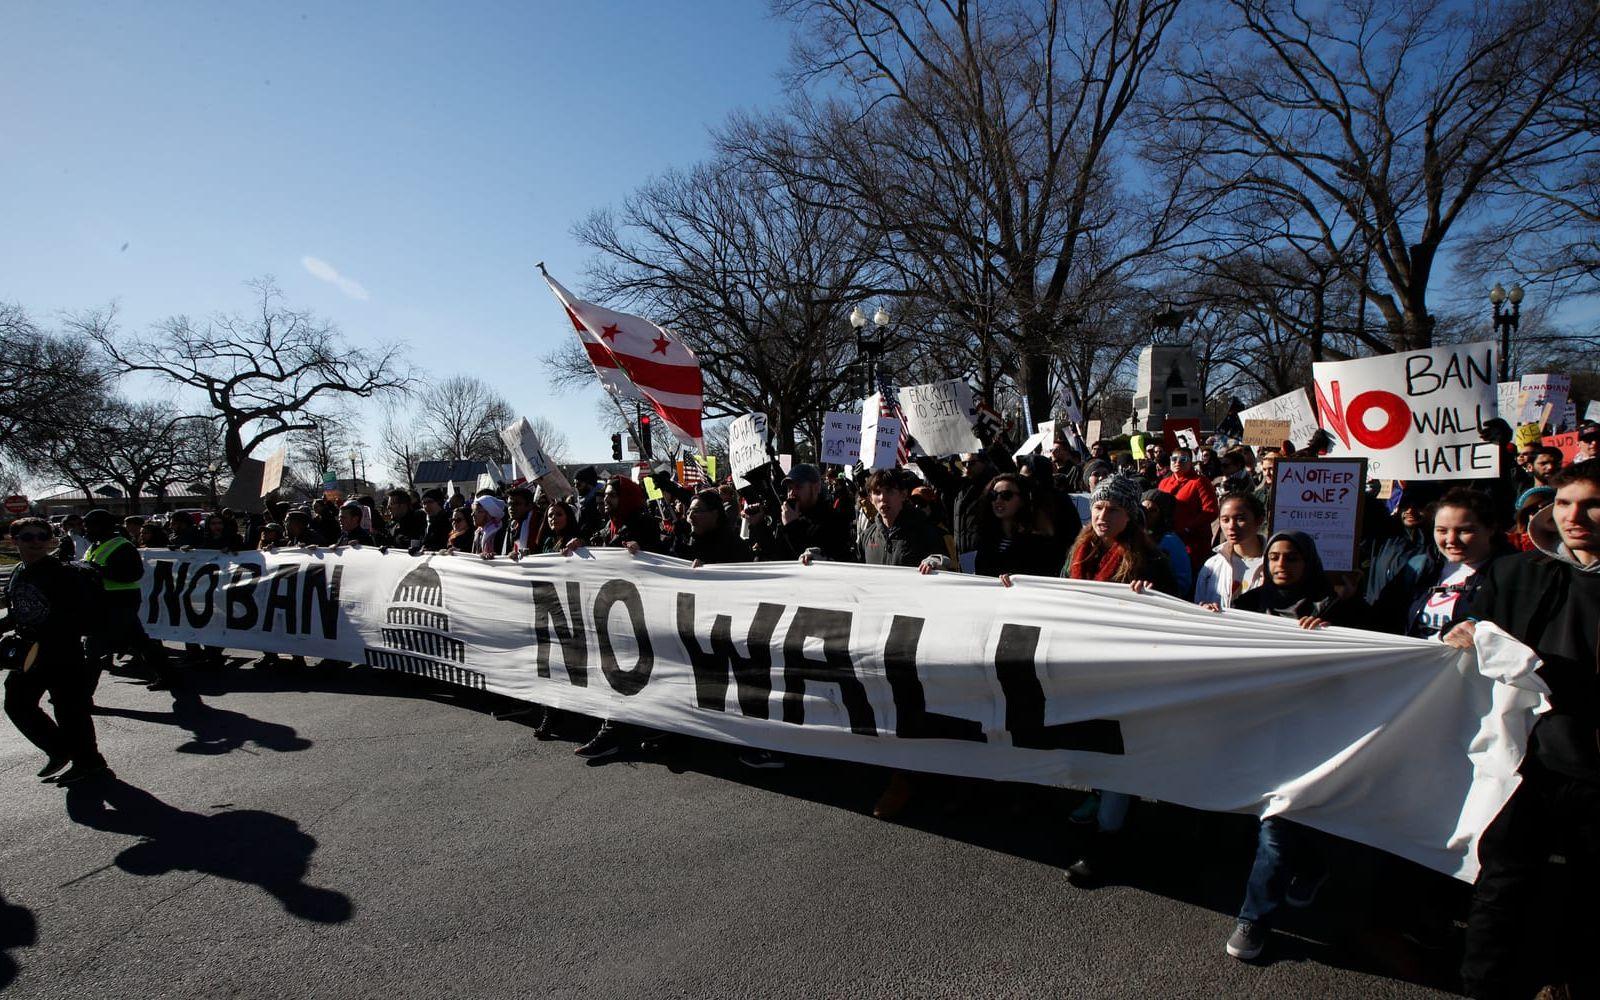 4 FEBRUARI: Presidenten gjorde inga offentliga framträdanden under helgen. Här syns protester utanför Vita Huset mot hans imigrationspolitik. Foto: TT